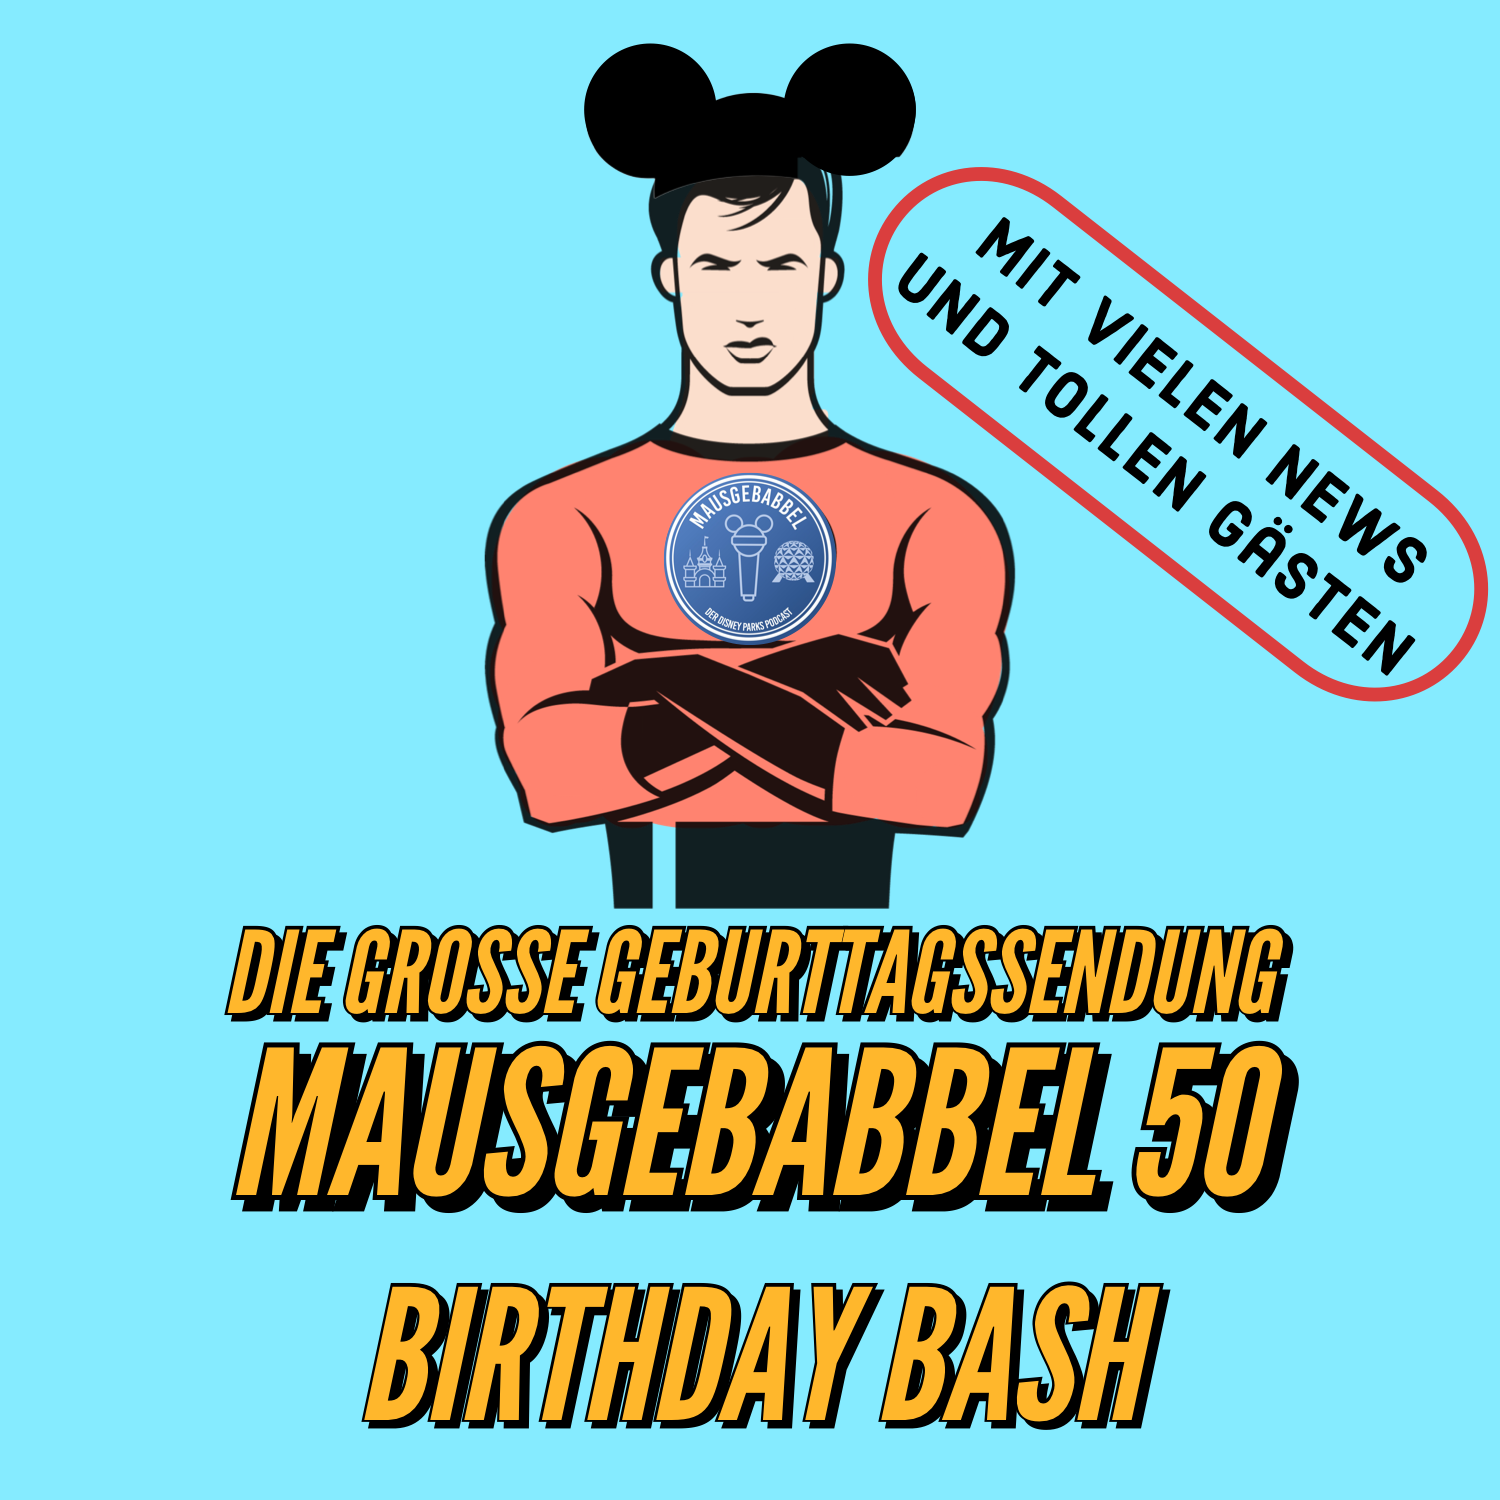 Mausgebabbel 50 - die große Geburtstagssendung mit vielen Disney Parks News und tollen Gästen 4